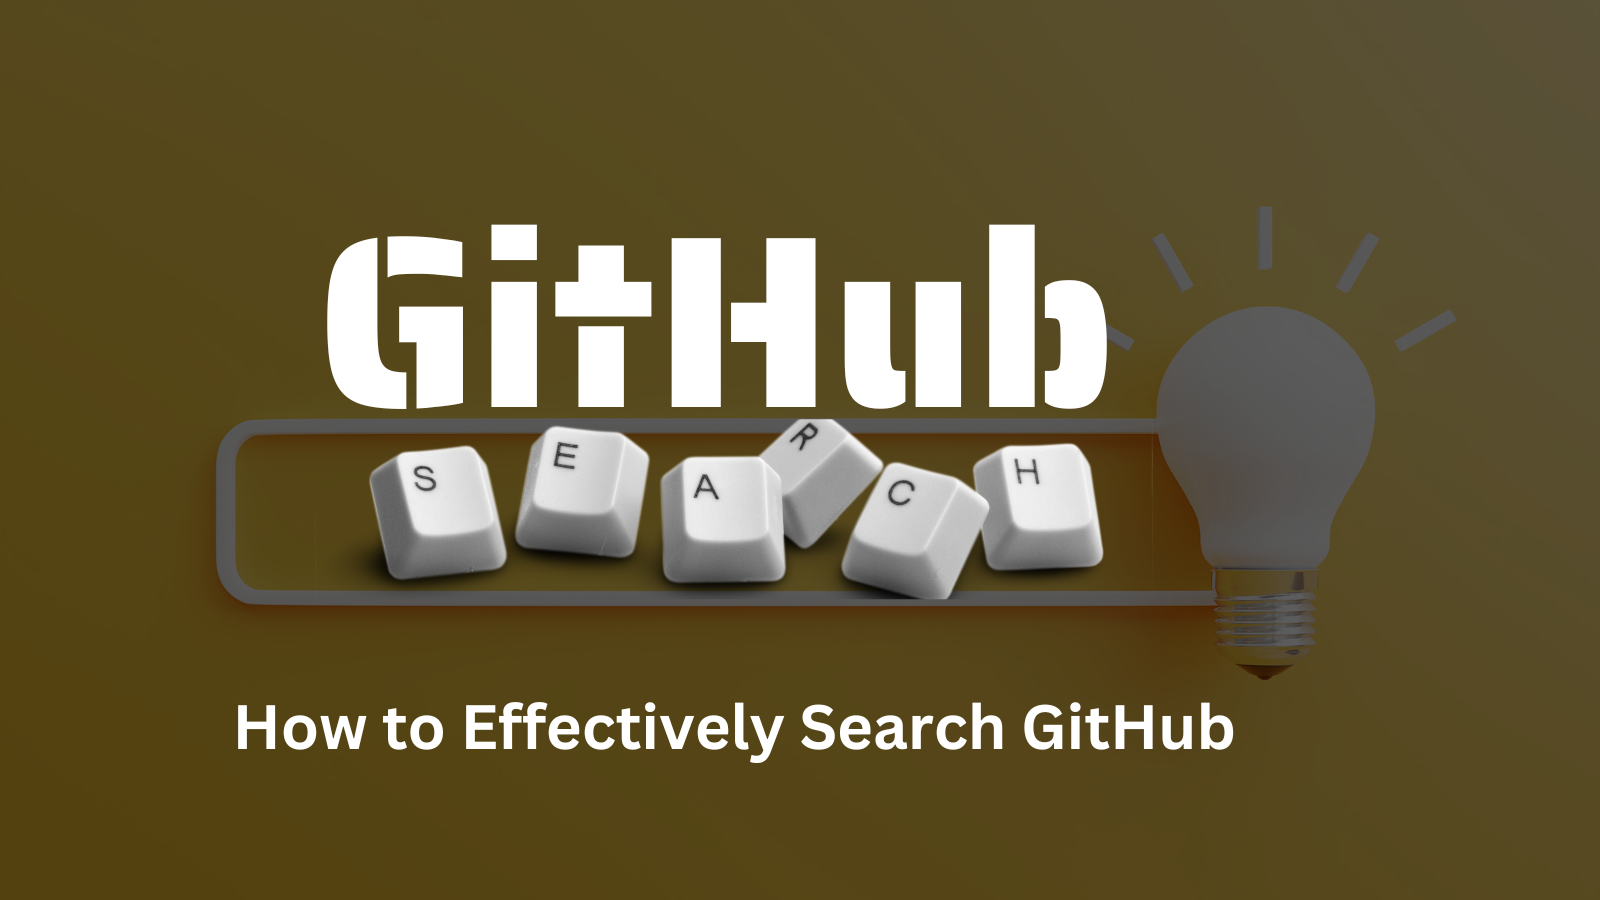 Consejos de búsqueda en GitHub: Cómo buscar problemas, repositorios y más de manera efectiva en GitHub